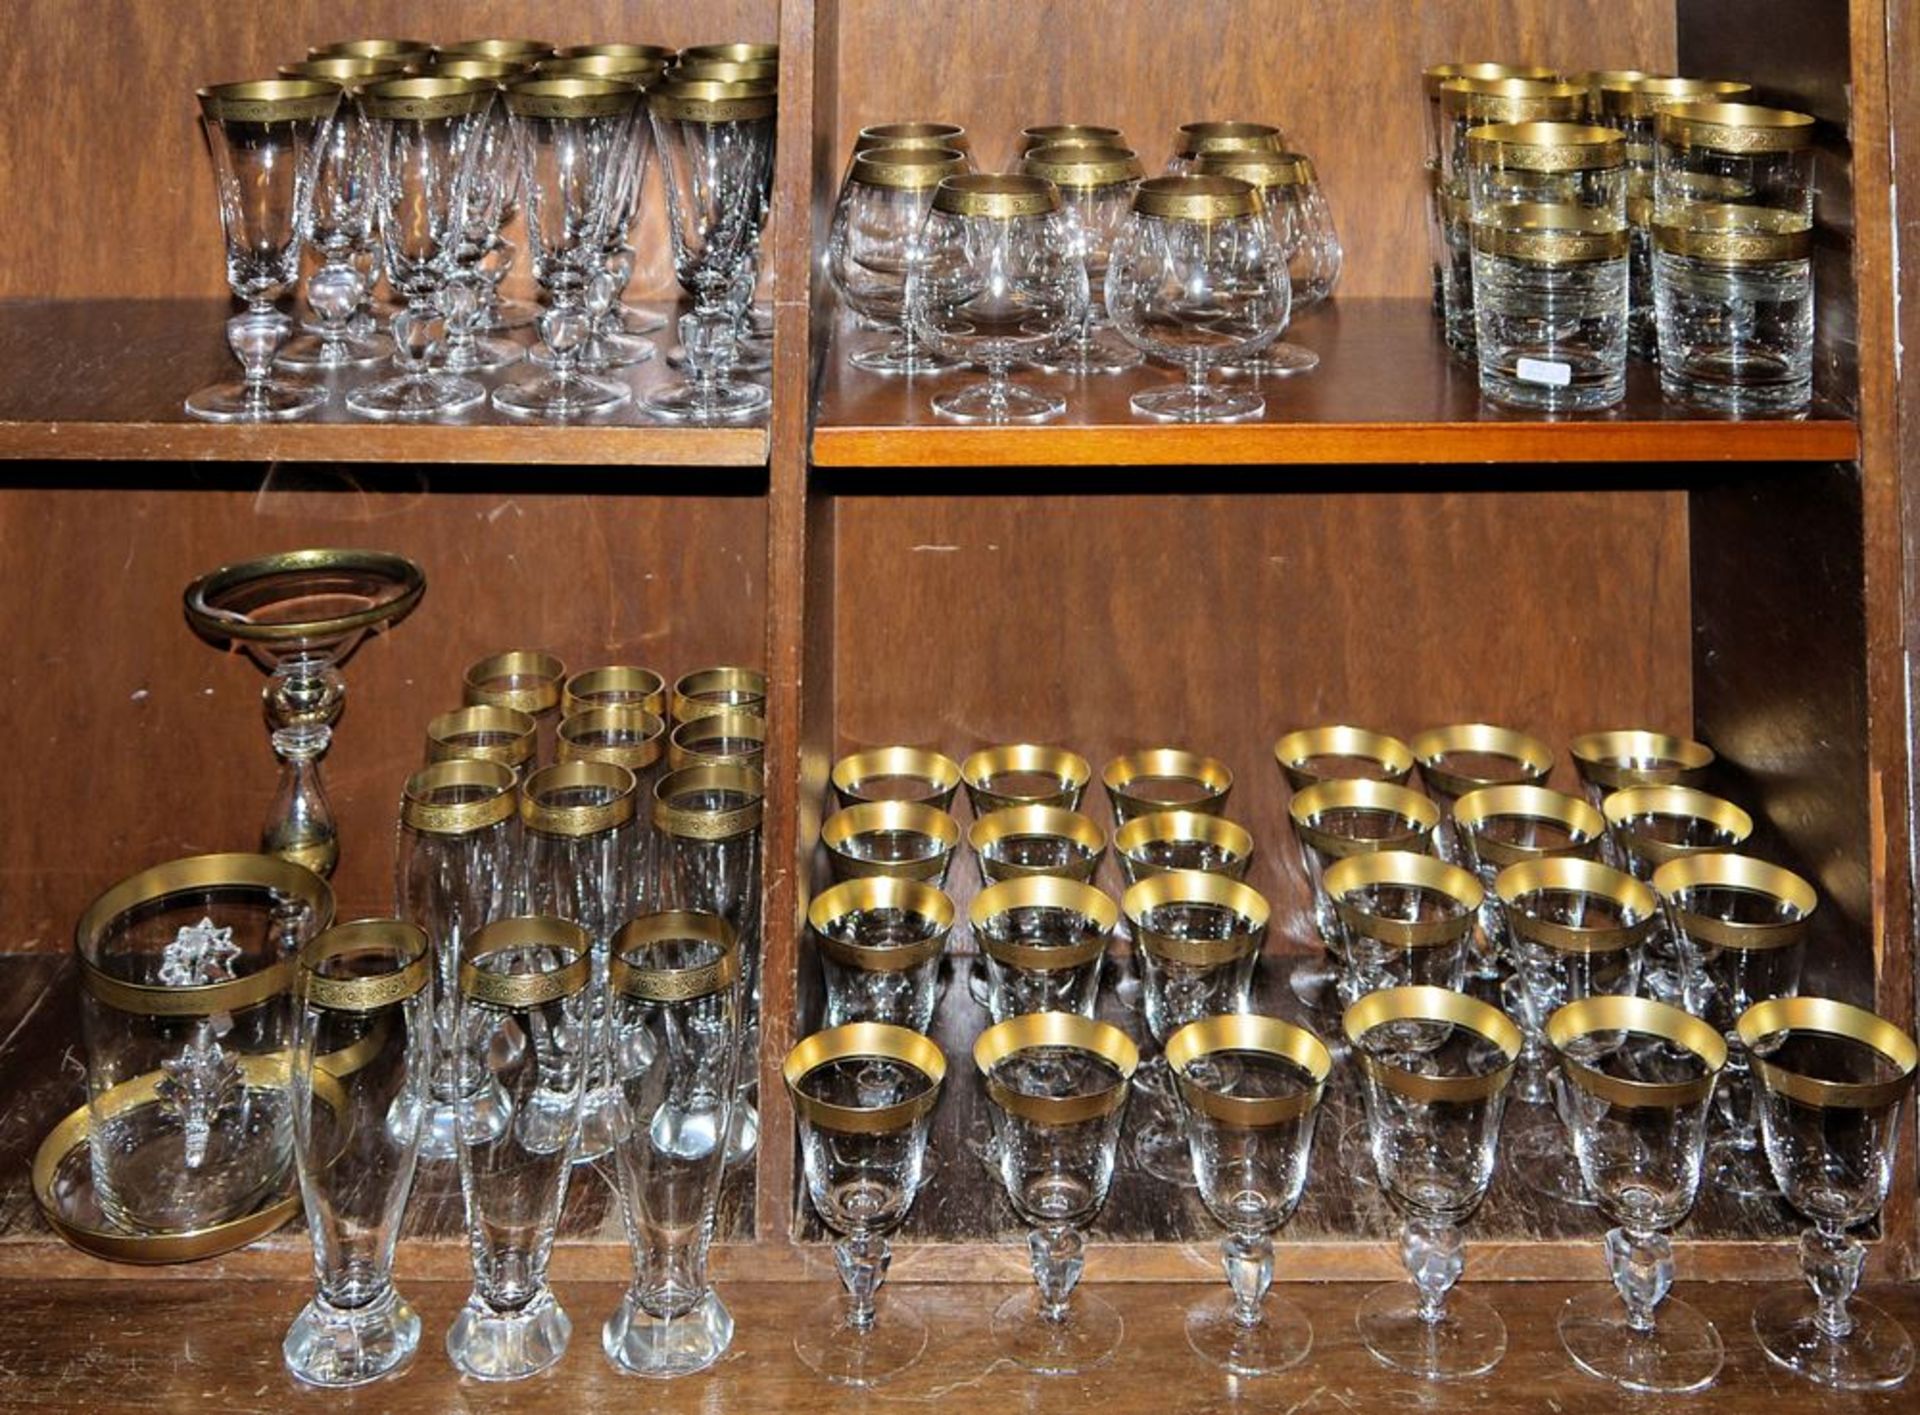 Umfangreiche Gläser-Sammlung Marlowe Minton mit Goldrand, Kristallglasmanufaktur Theresienthal - Image 2 of 2